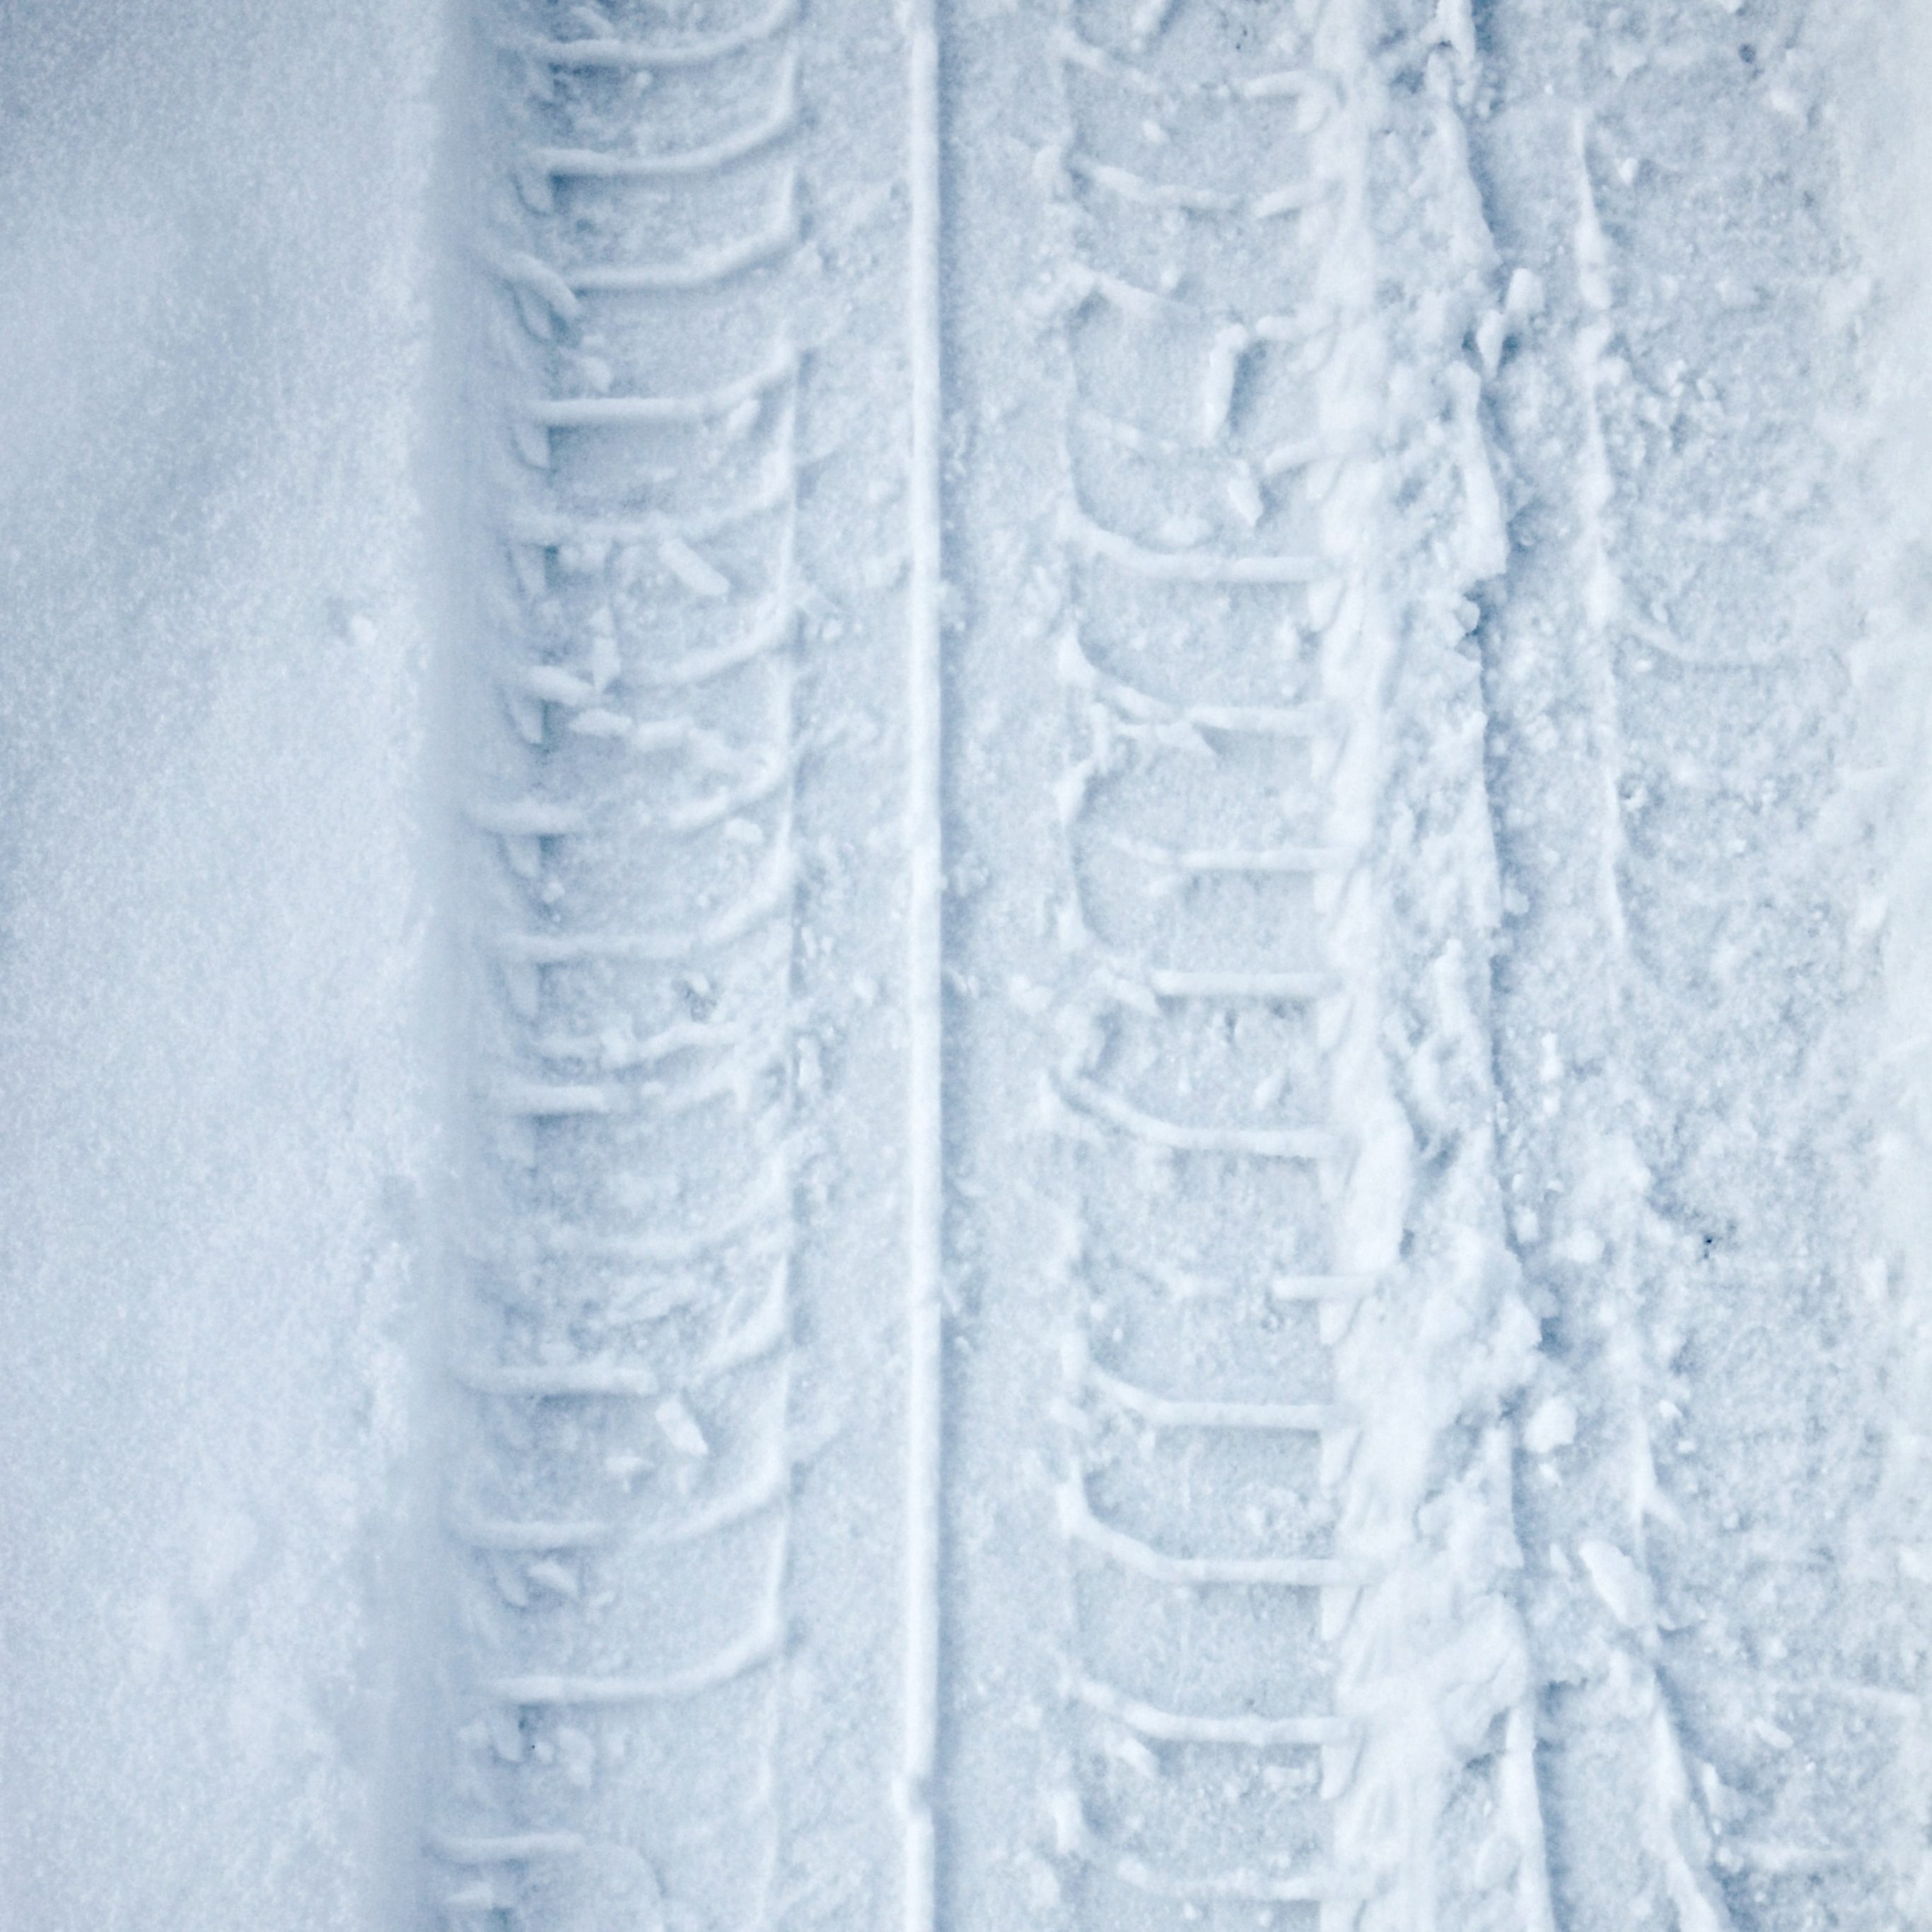 2732x2732 wallpapers 4k iPad Pro Tyre Track Snow Winter iPad Wallpaper 2732x2732 pixels resolution